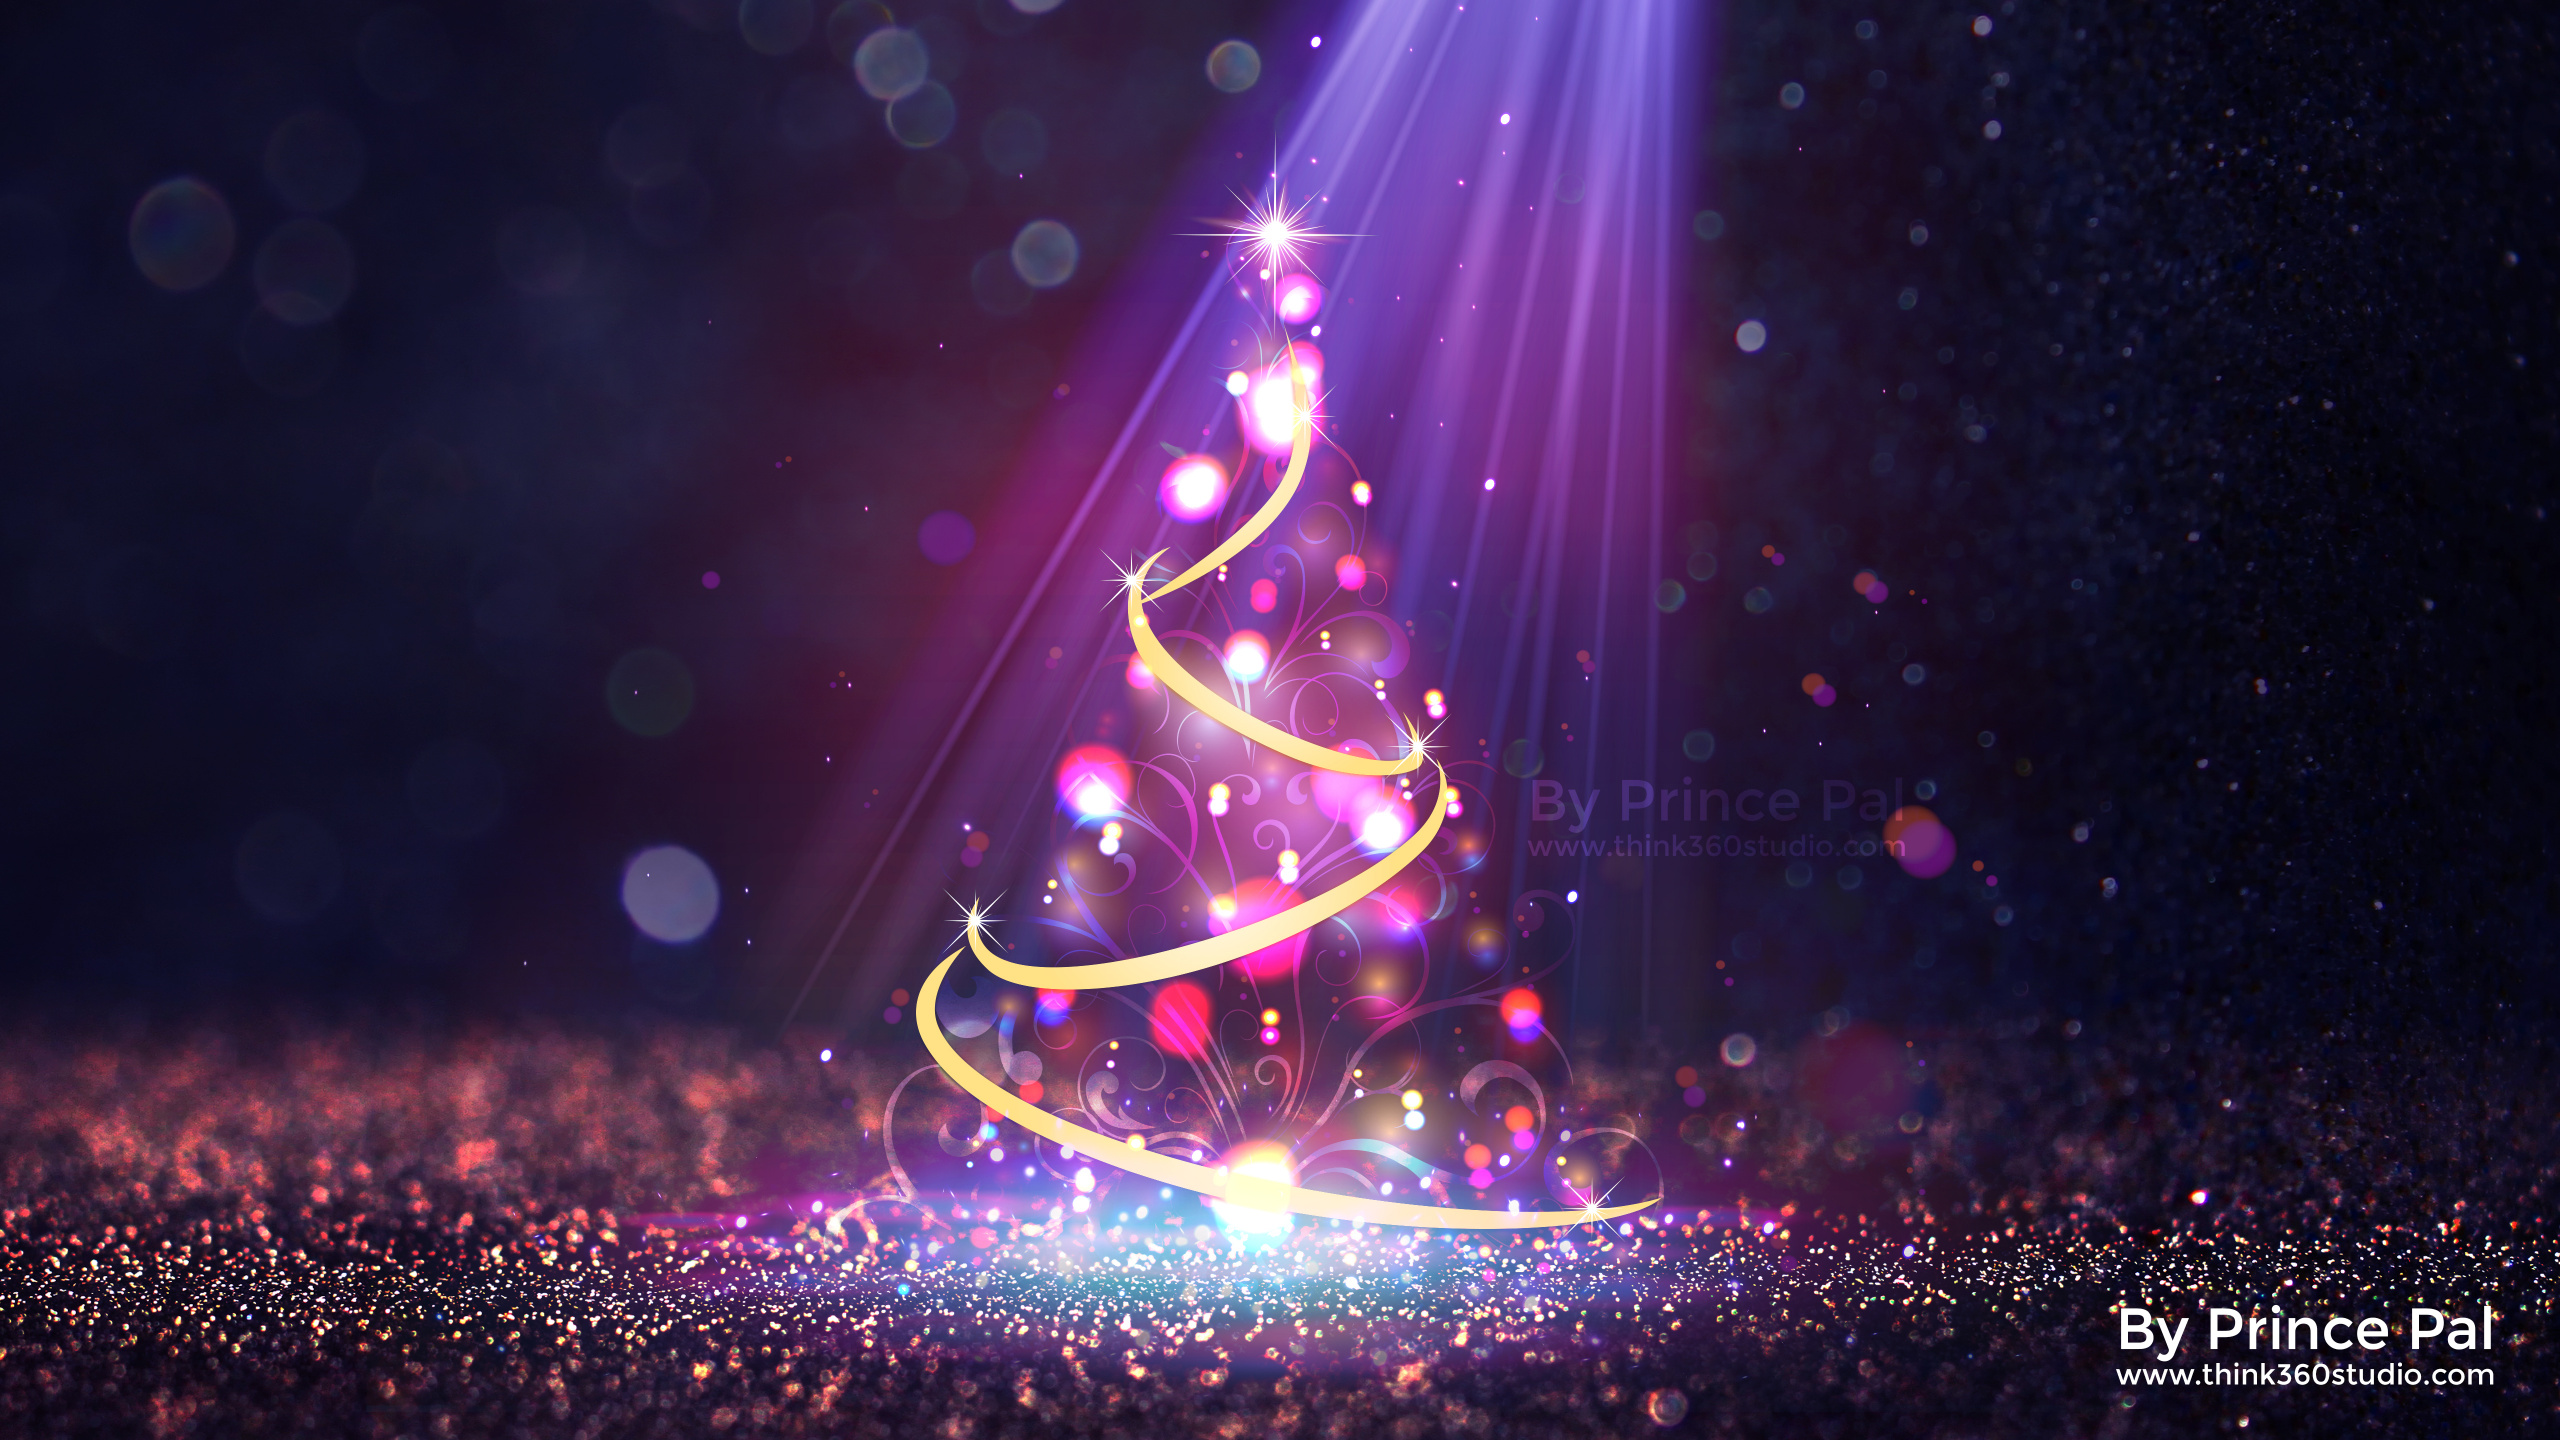 Weihnachten, Purpur, Veilchen, Bühne, Licht. Wallpaper in 2560x1440 Resolution